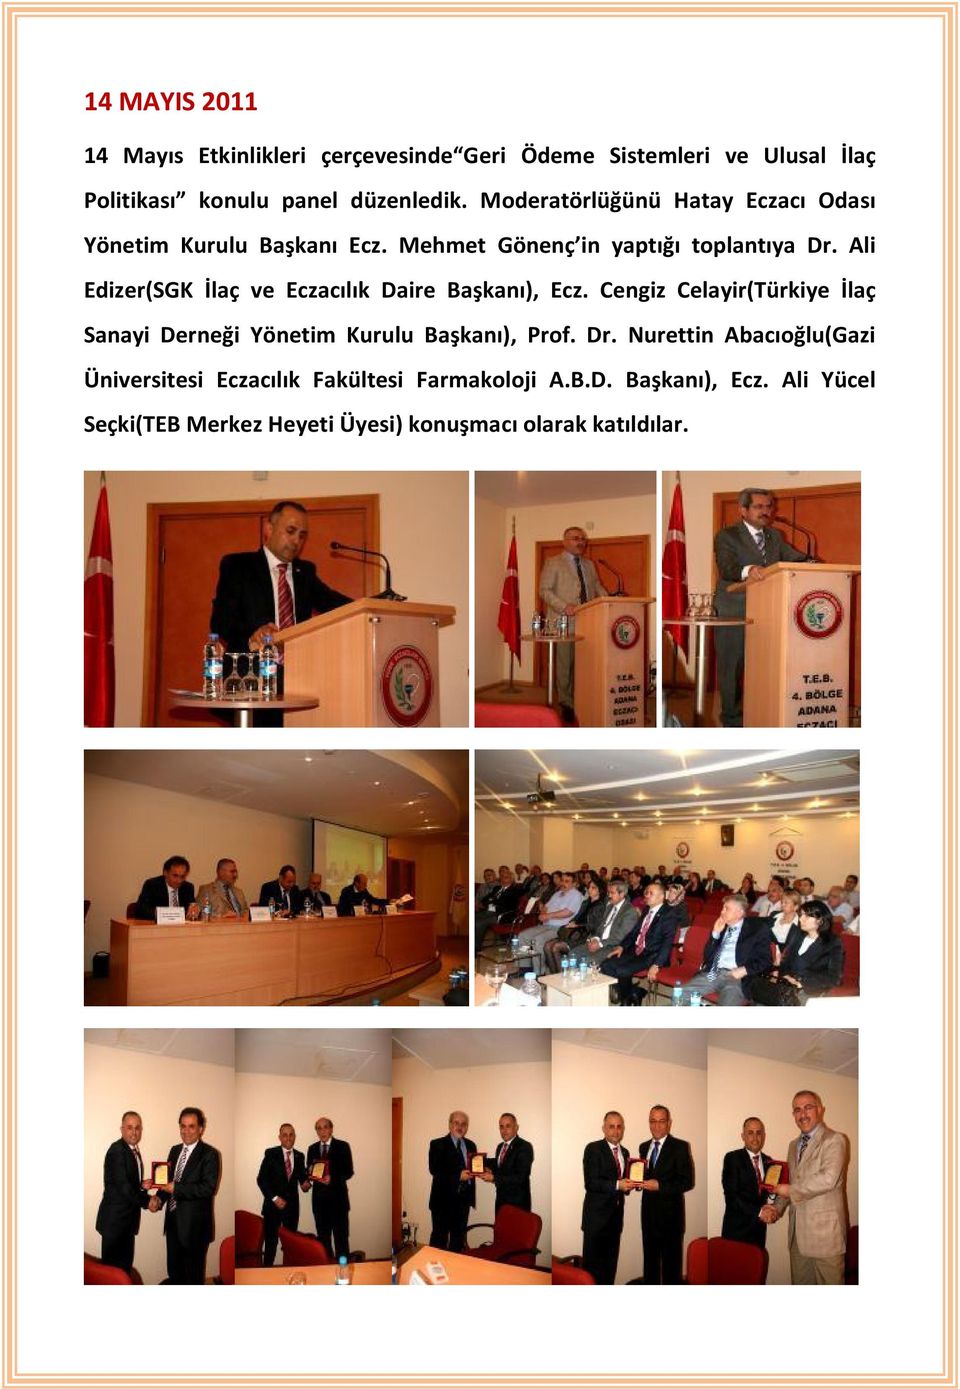 Ali Edizer(SGK İlaç ve Eczacılık Daire Başkanı), Ecz. Cengiz Celayir(Türkiye İlaç Sanayi Derneği Yönetim Kurulu Başkanı), Prof.